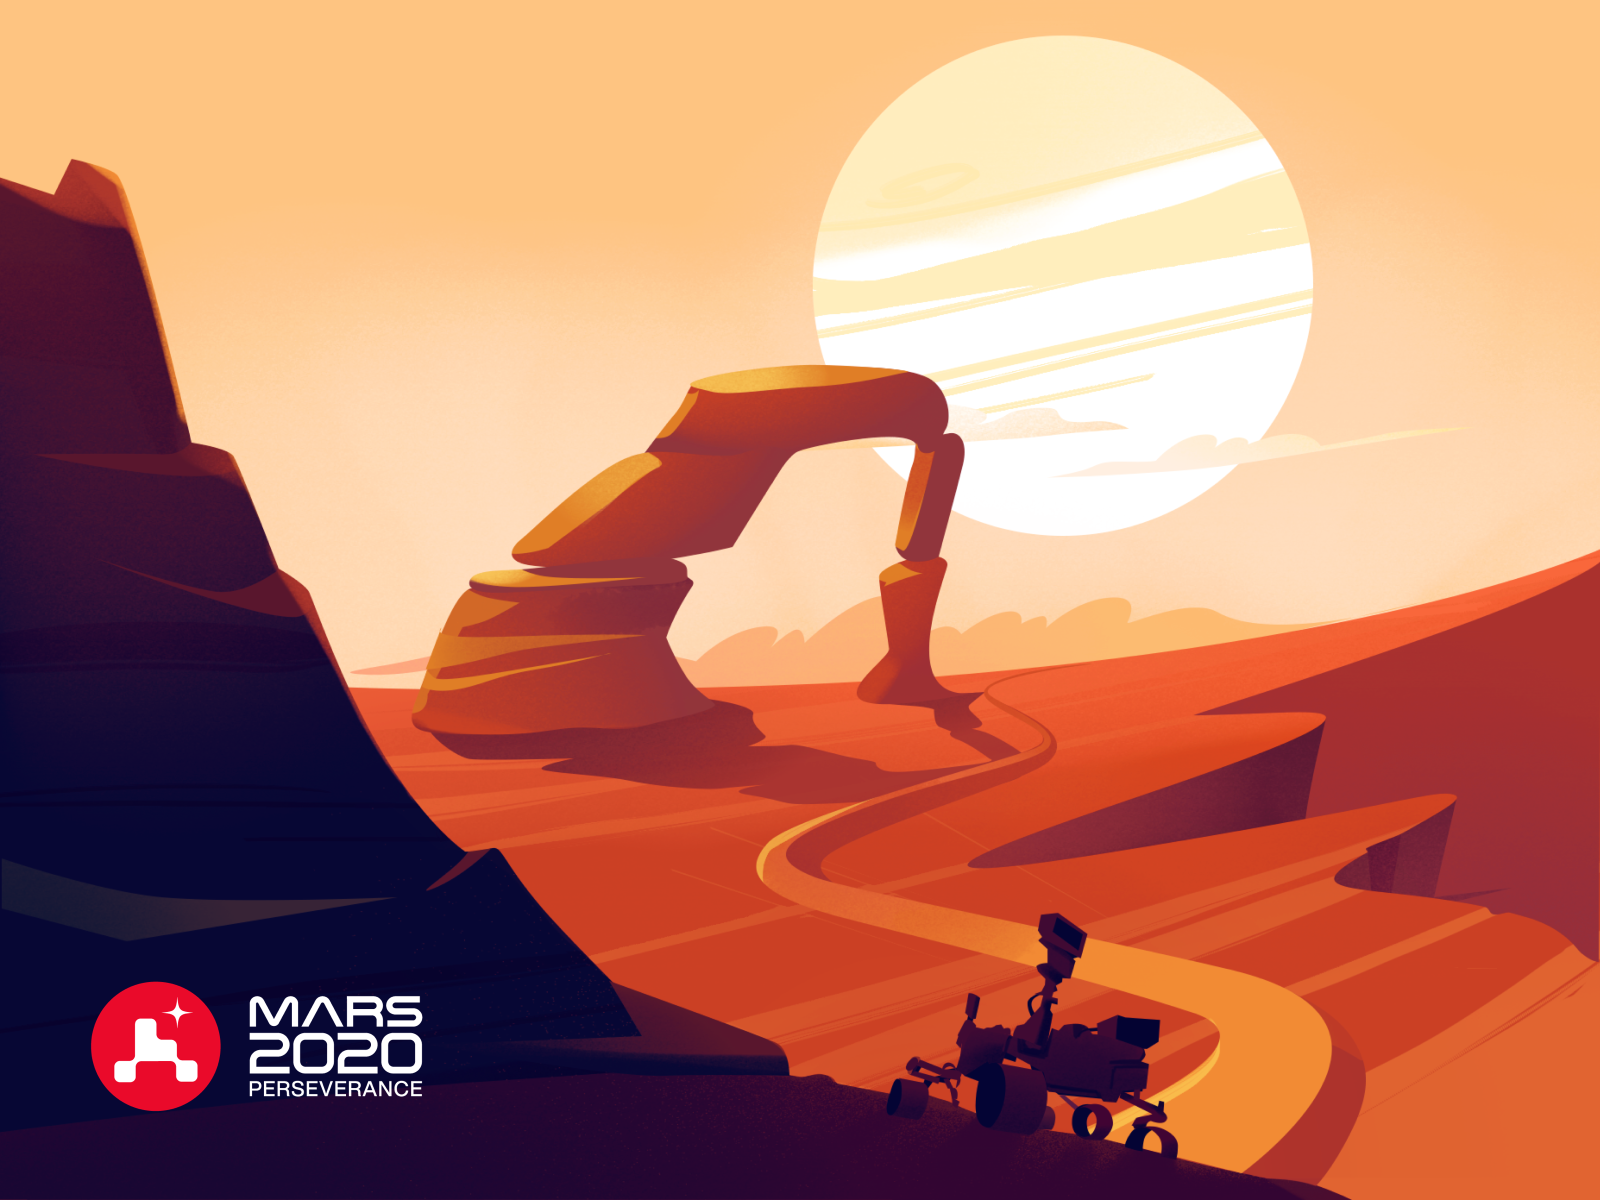 Illustration Mars 2020 Perseverance perseverance mars 2020 nasa 2021 nasa 2020 mars illustration mars nasa illustrator ui colors illustration